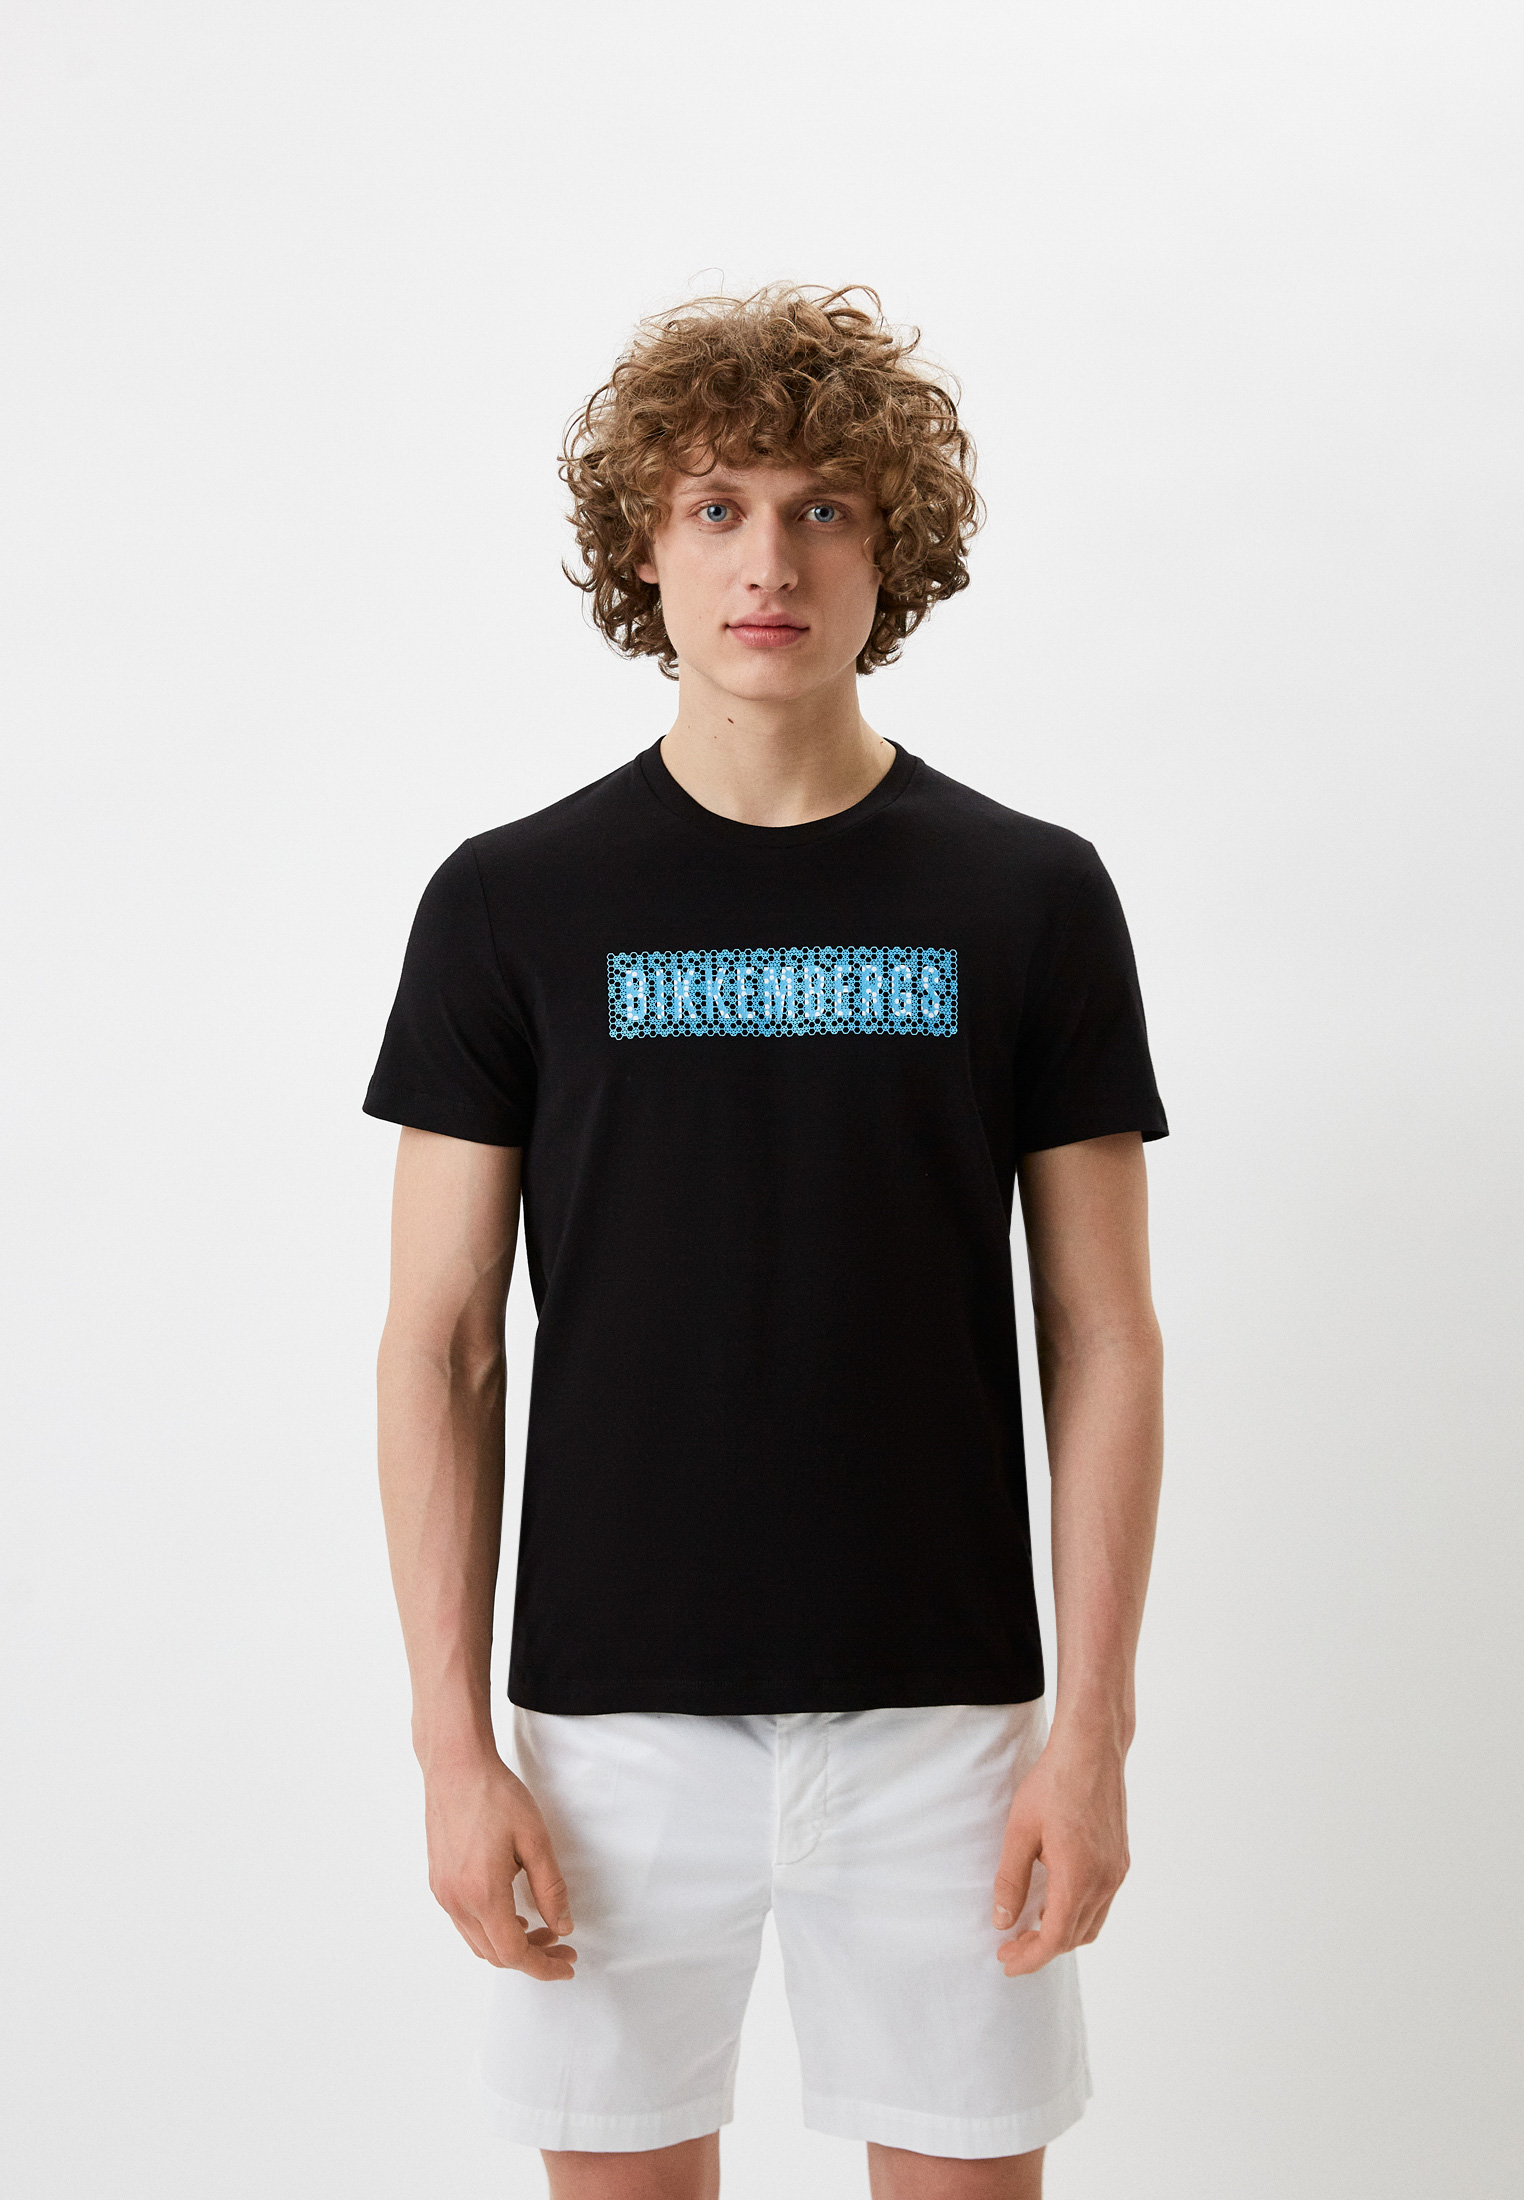 Мужская футболка Bikkembergs (Биккембергс) C 4 101 04 E 2231: изображение 1